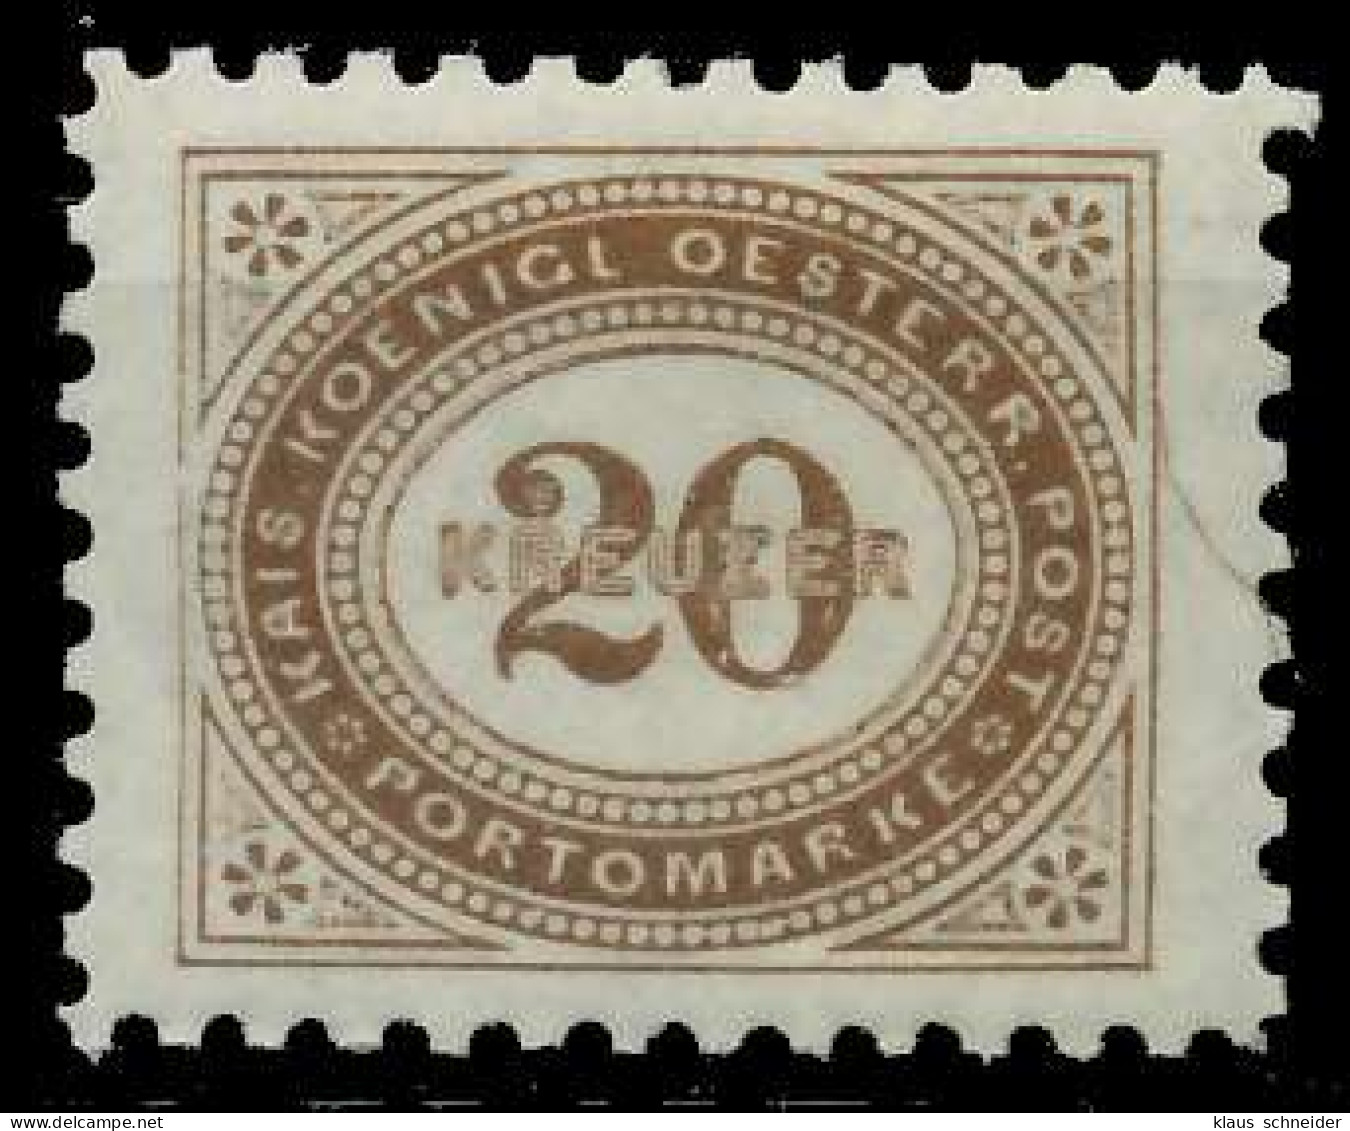 ÖSTERREICH PORTOMARKEN 1894 Nr 8A Postfrisch X7428BA - Postage Due